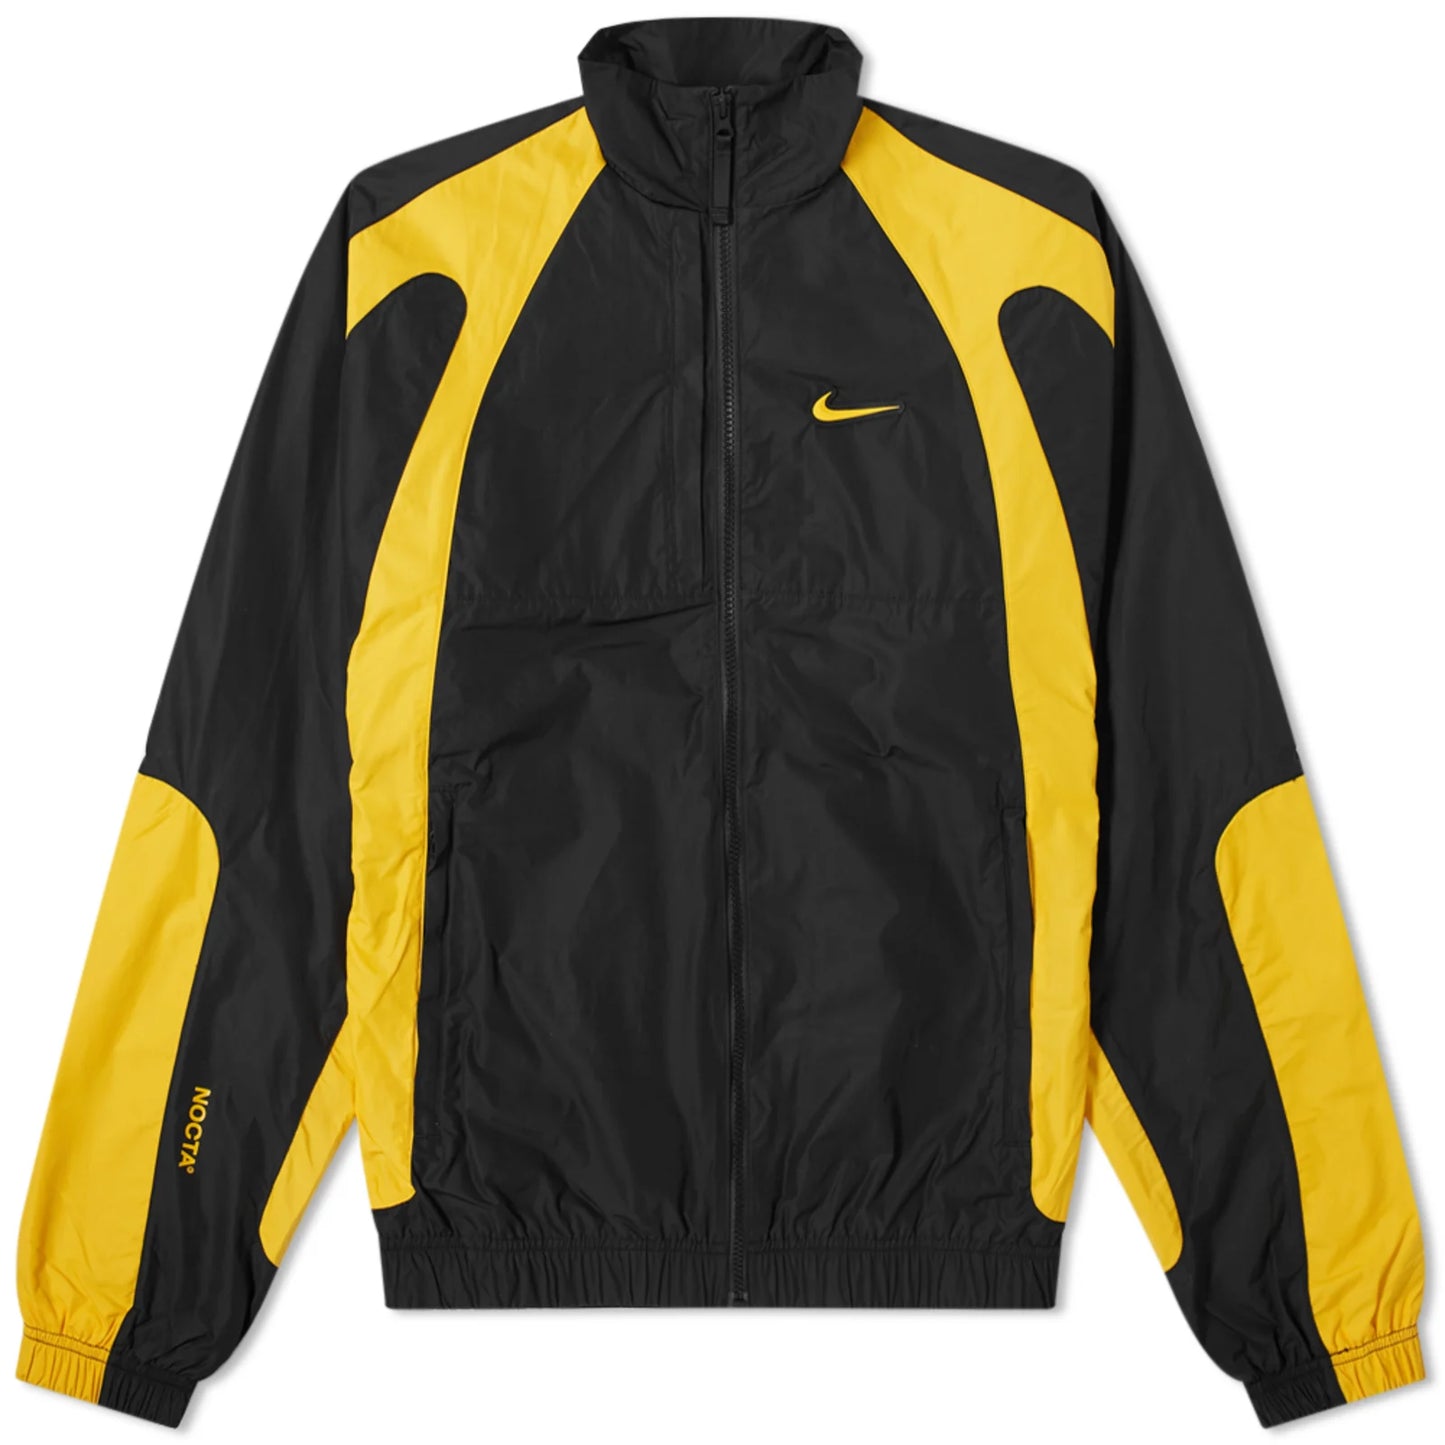 Nike x NOCTA Track Jacket “Black”